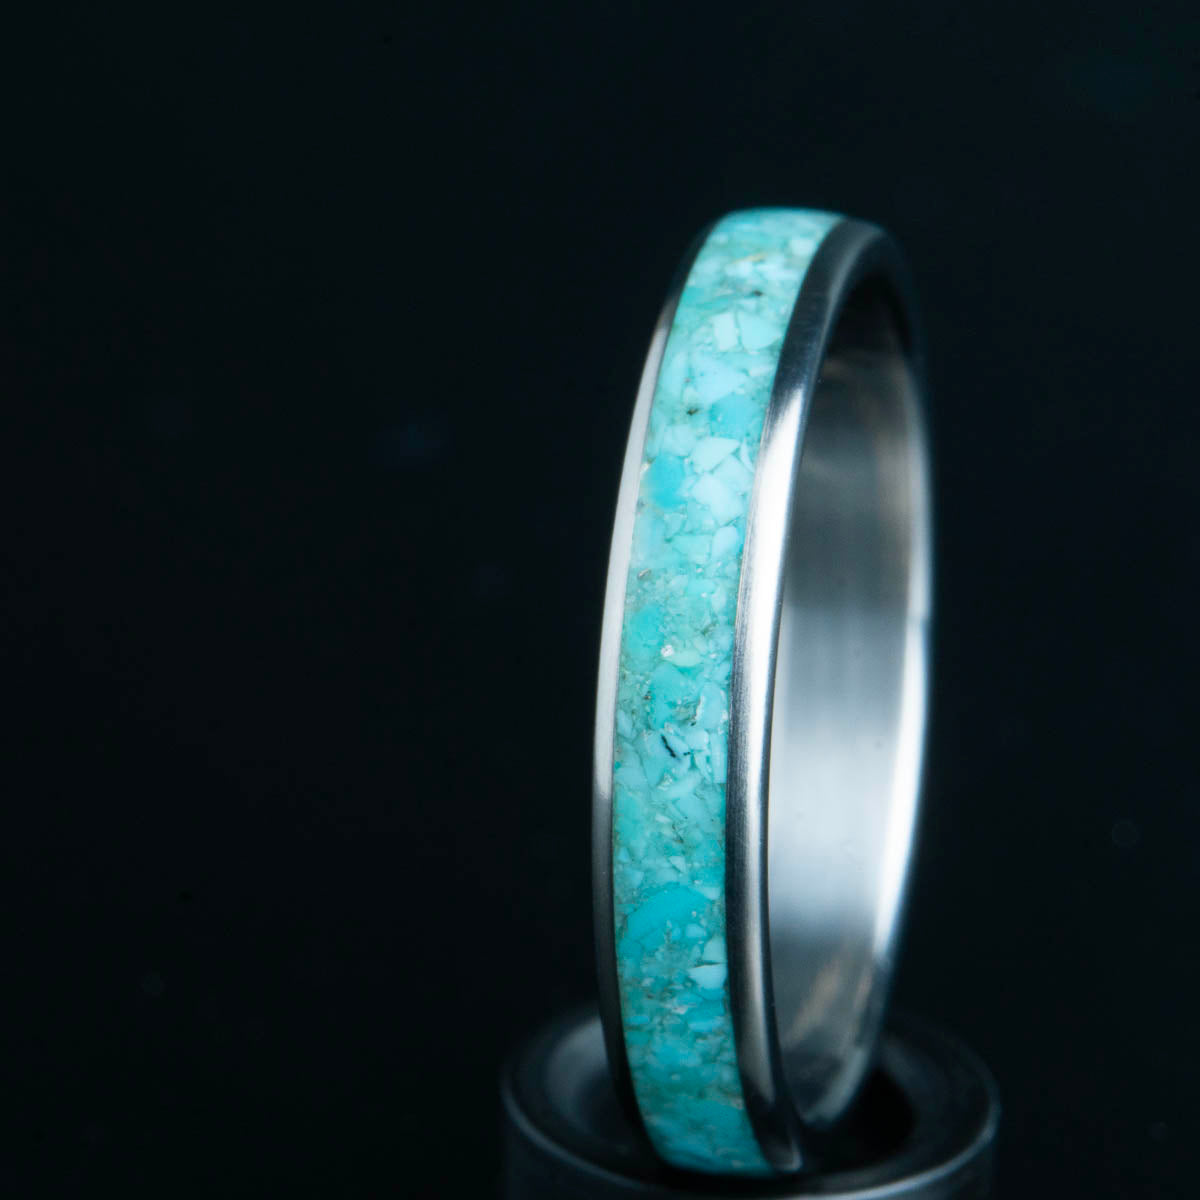 4mm turquoise titanium ring